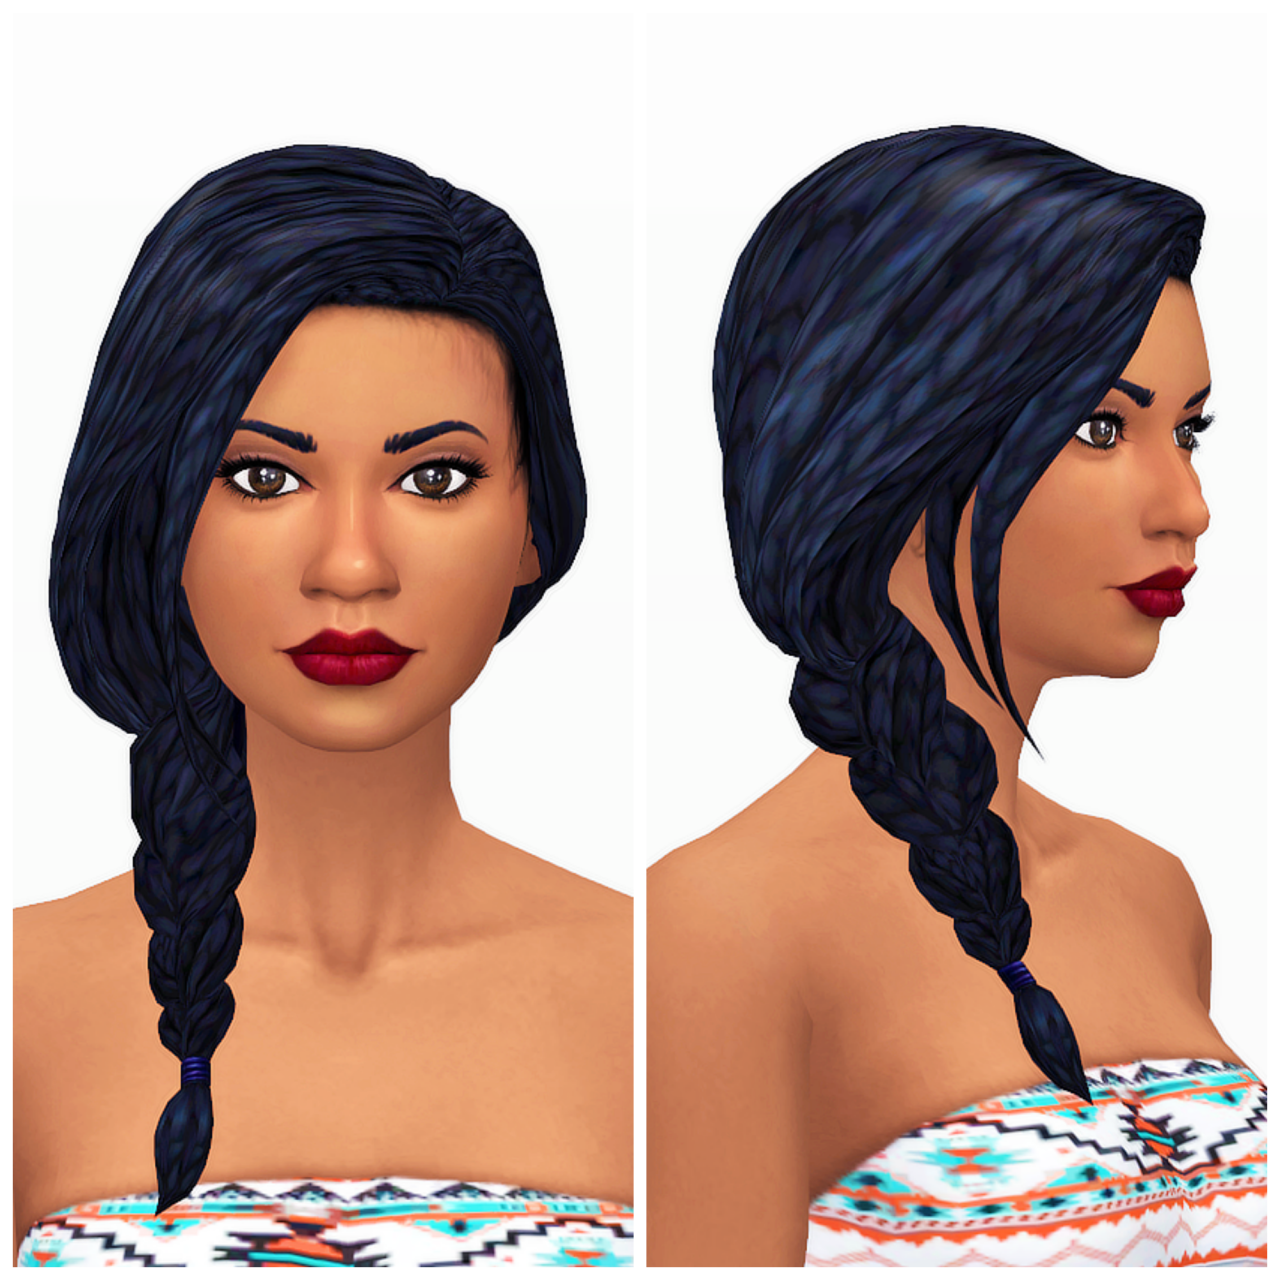 Sims 4 cc hair braids - creatorpase